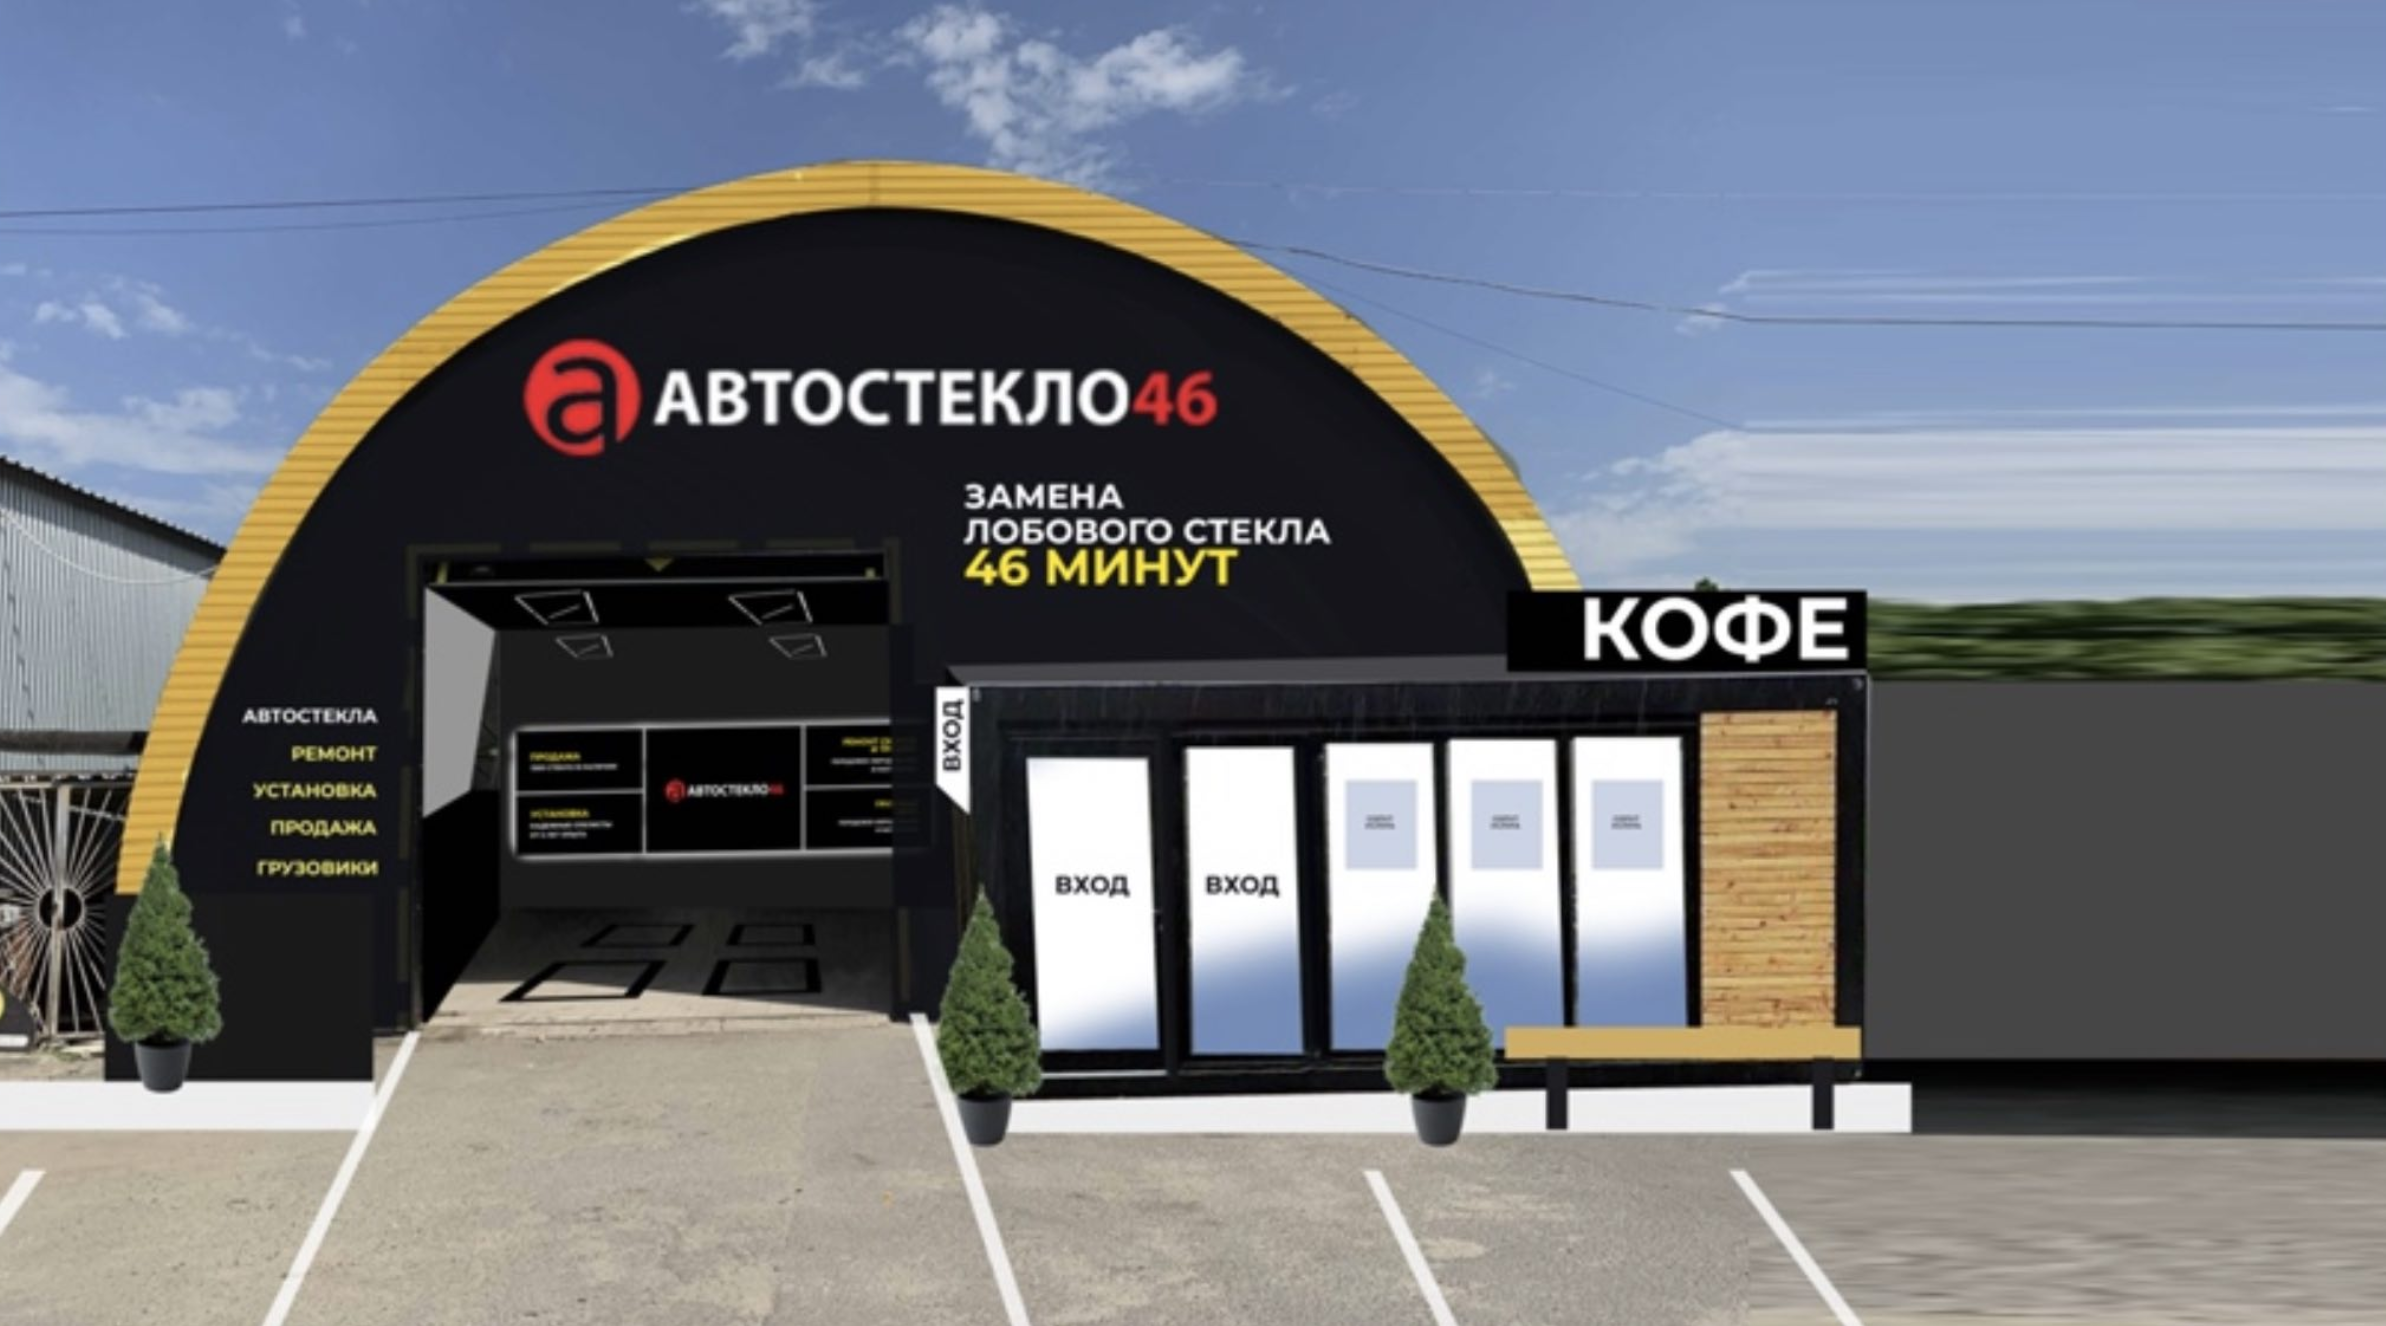 Автостекло 46 — продажа, установка и ремонт автостекла в Курске